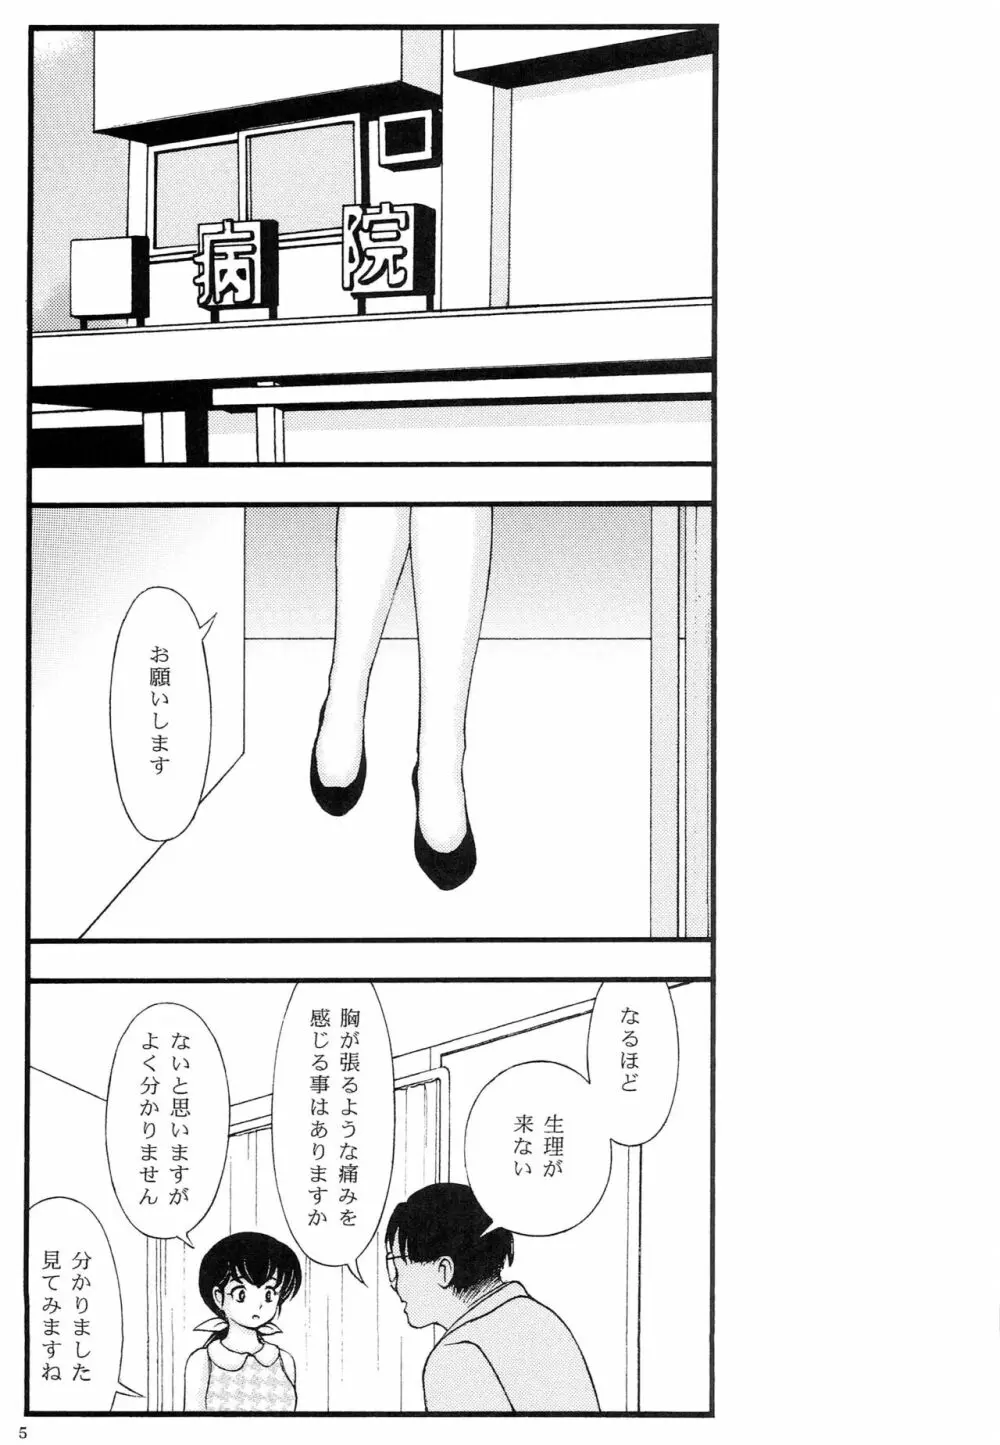 巨乳痴漢響子と夏美ポニーテール総集編 - page4